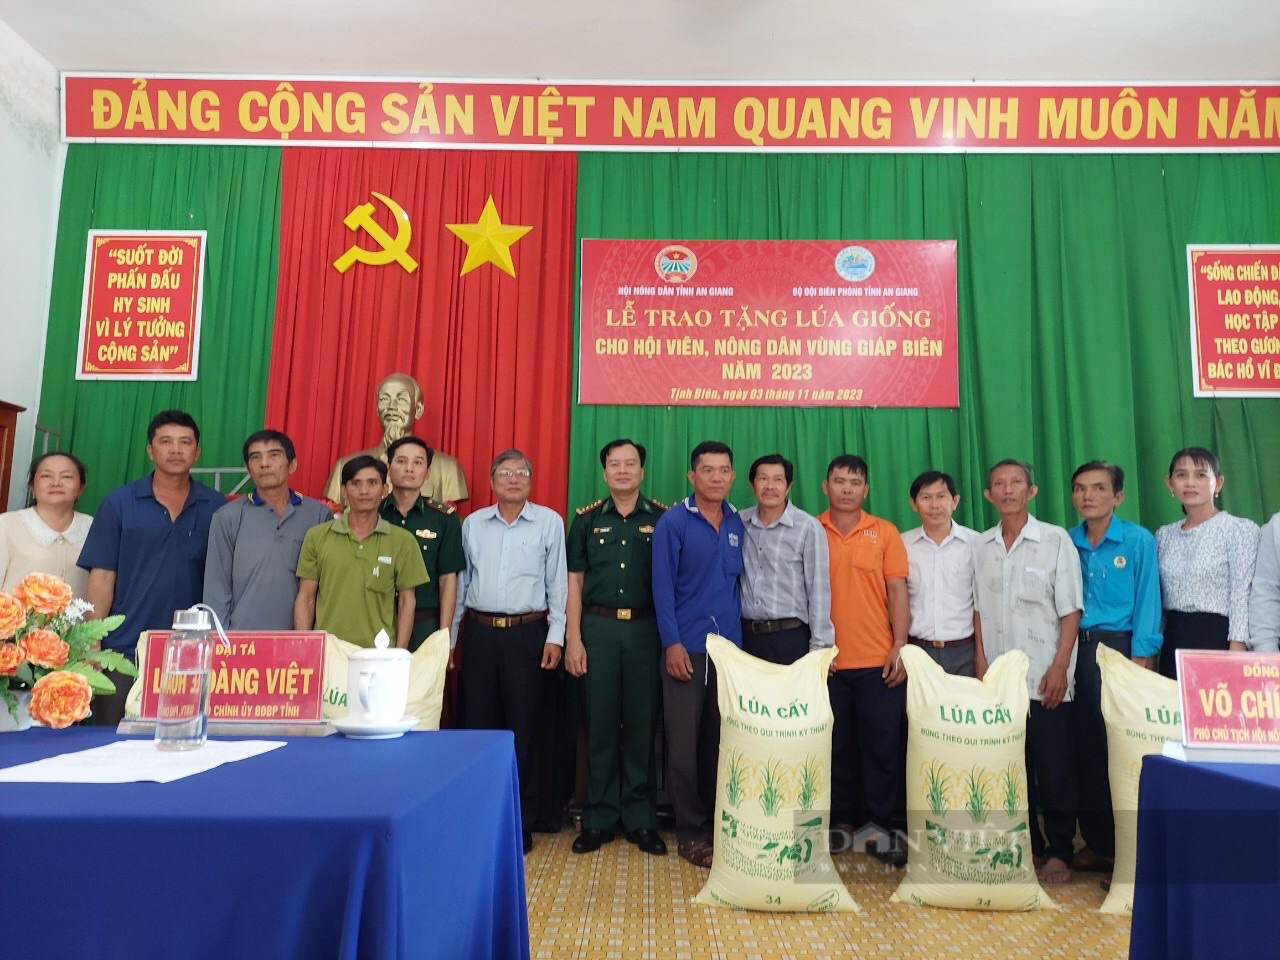 Hội Nông dân tỉnh An Giang trao tặng hơn 1.000kg lúa giống cho hội viên nông dân vùng giáp biên - Ảnh 2.